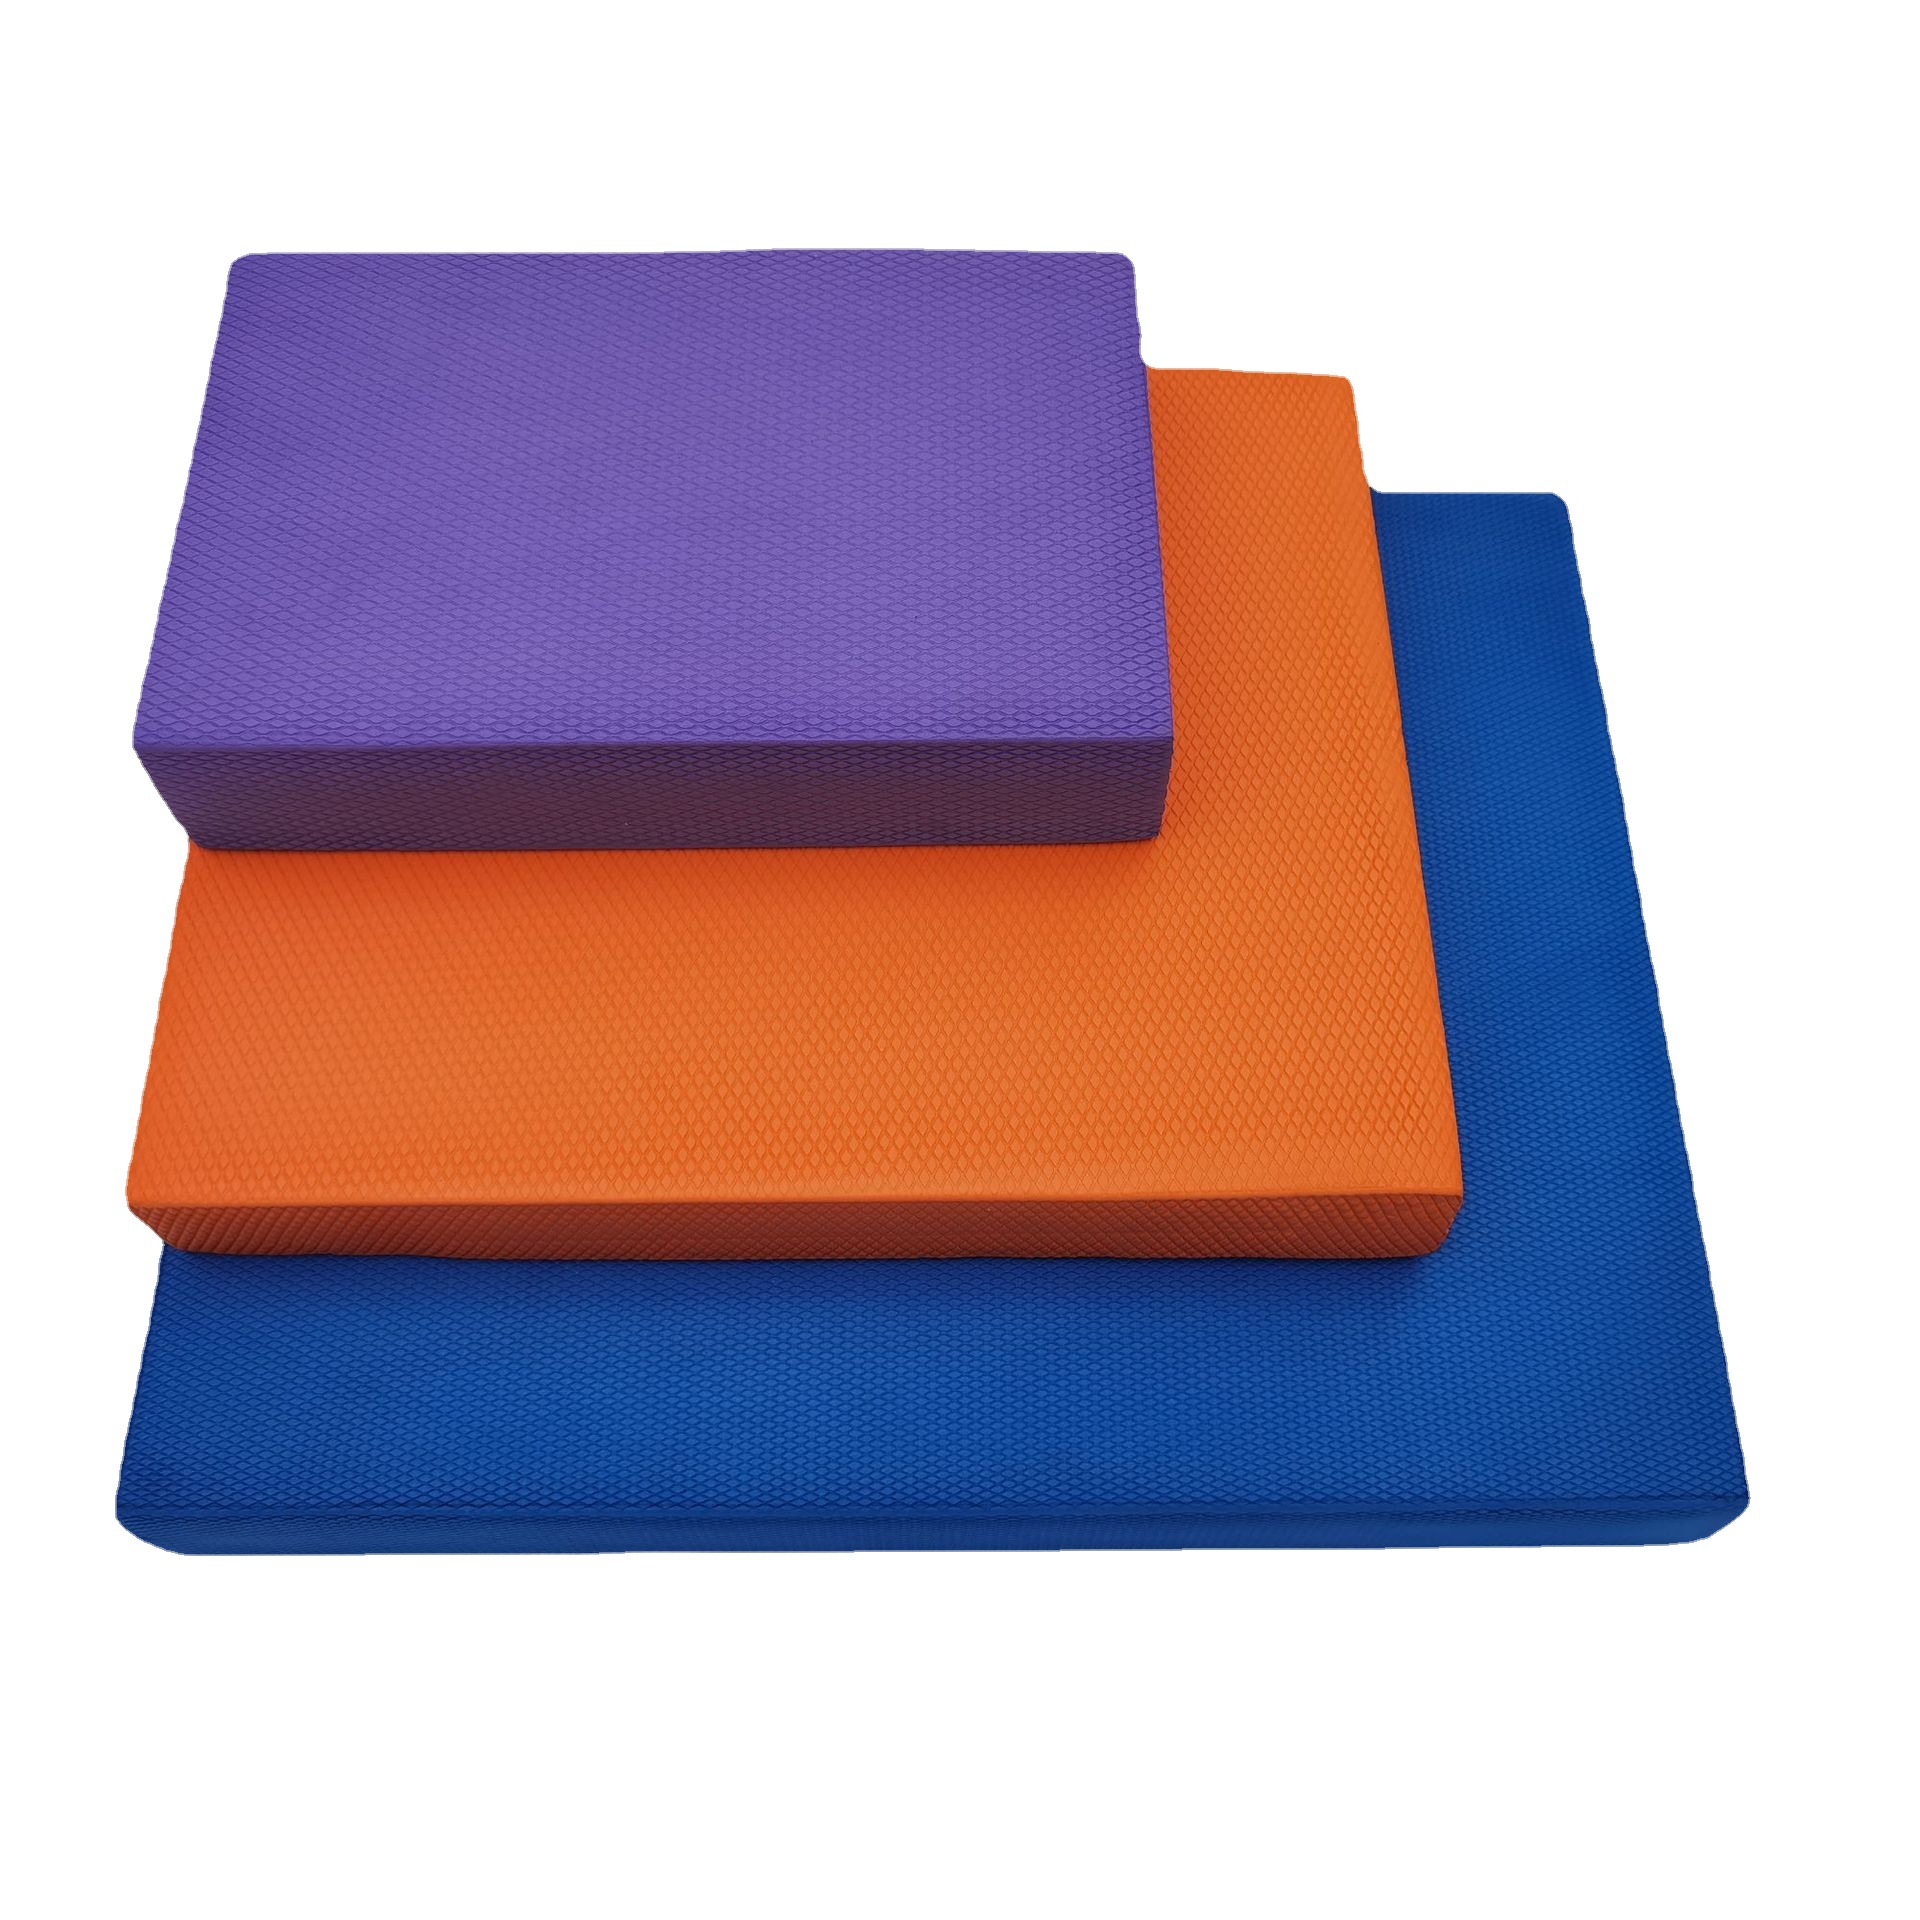 厂家TPE平衡垫 健身平板支撑TPE瑜伽垫平衡训练软踏垫平衡软塌板